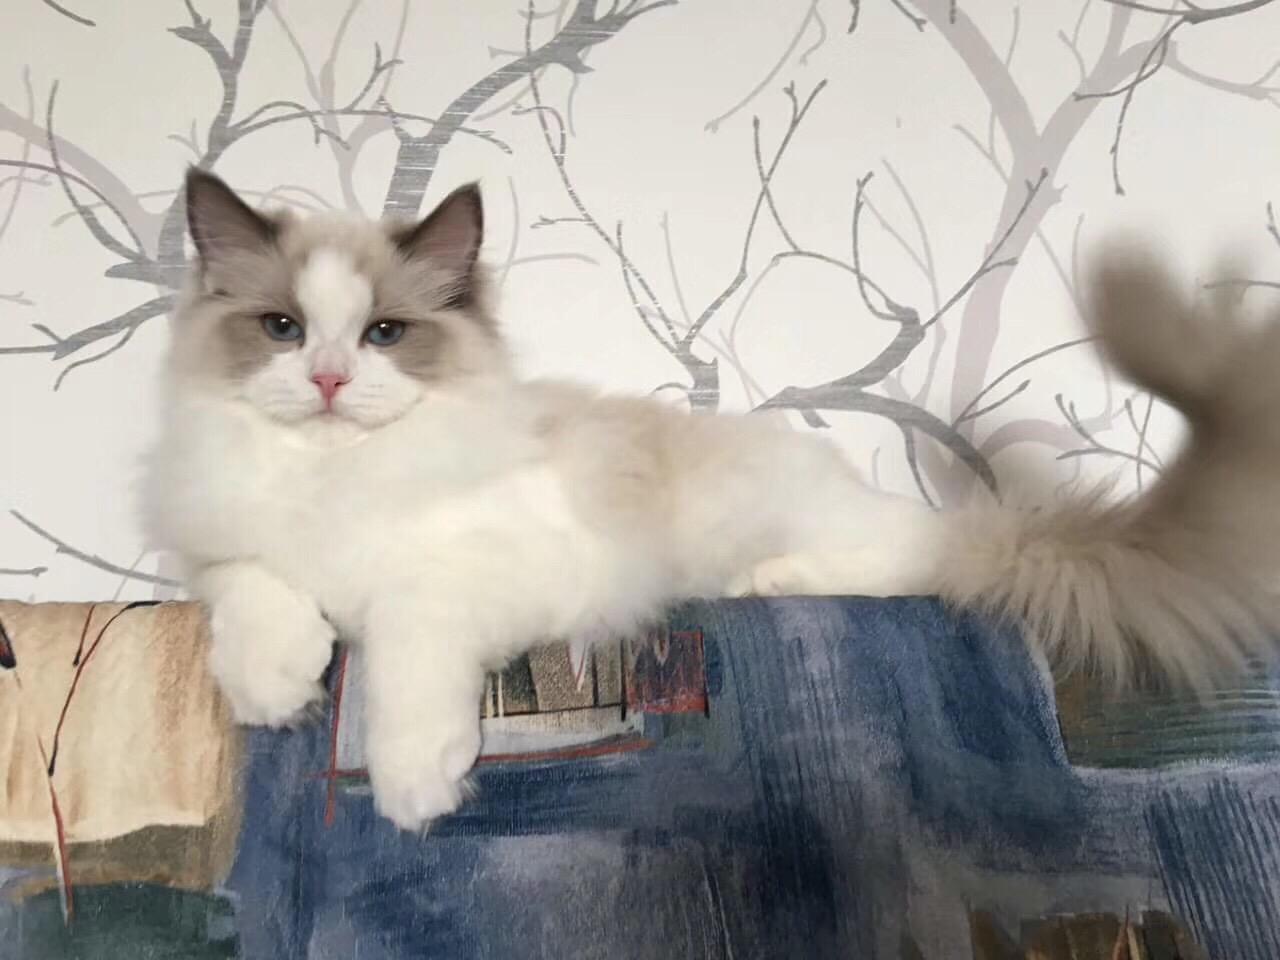 纯白 蓝白 网红猫 布偶猫 高地 英短 美短 乳白 蓝眼睛猫咪 加菲 精品